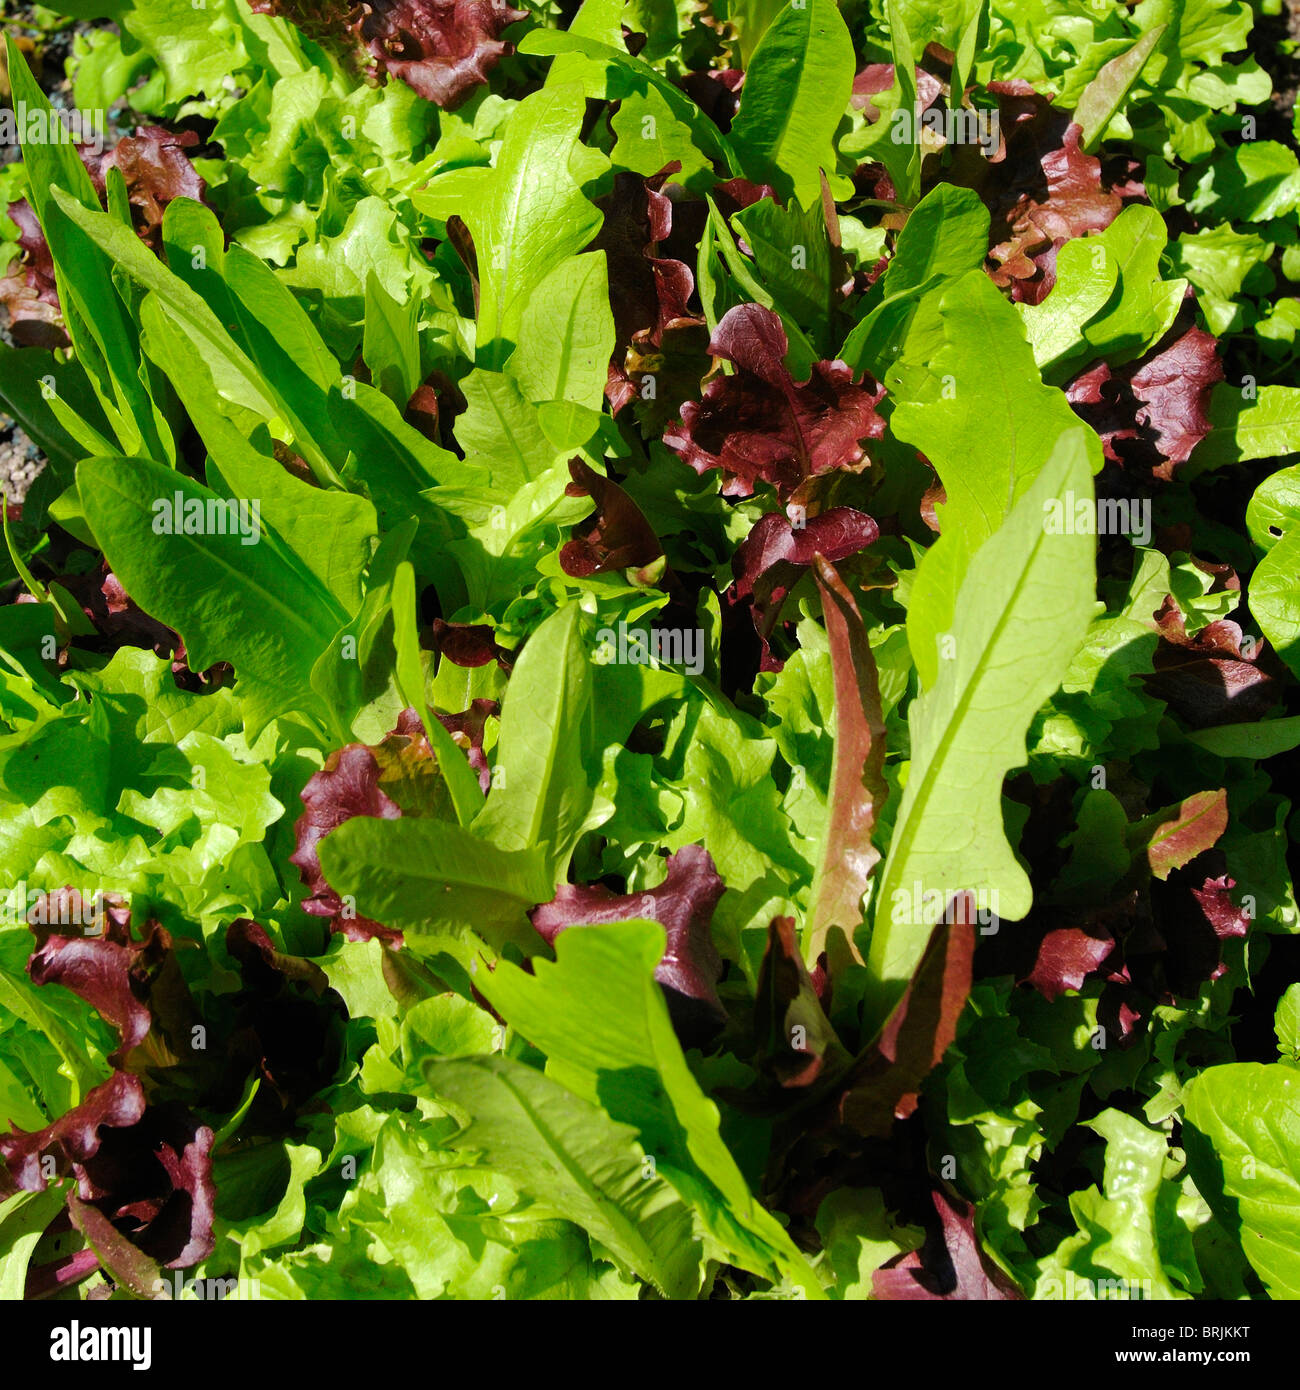 Fresh lettuce leaves in sunlight Stock Photo